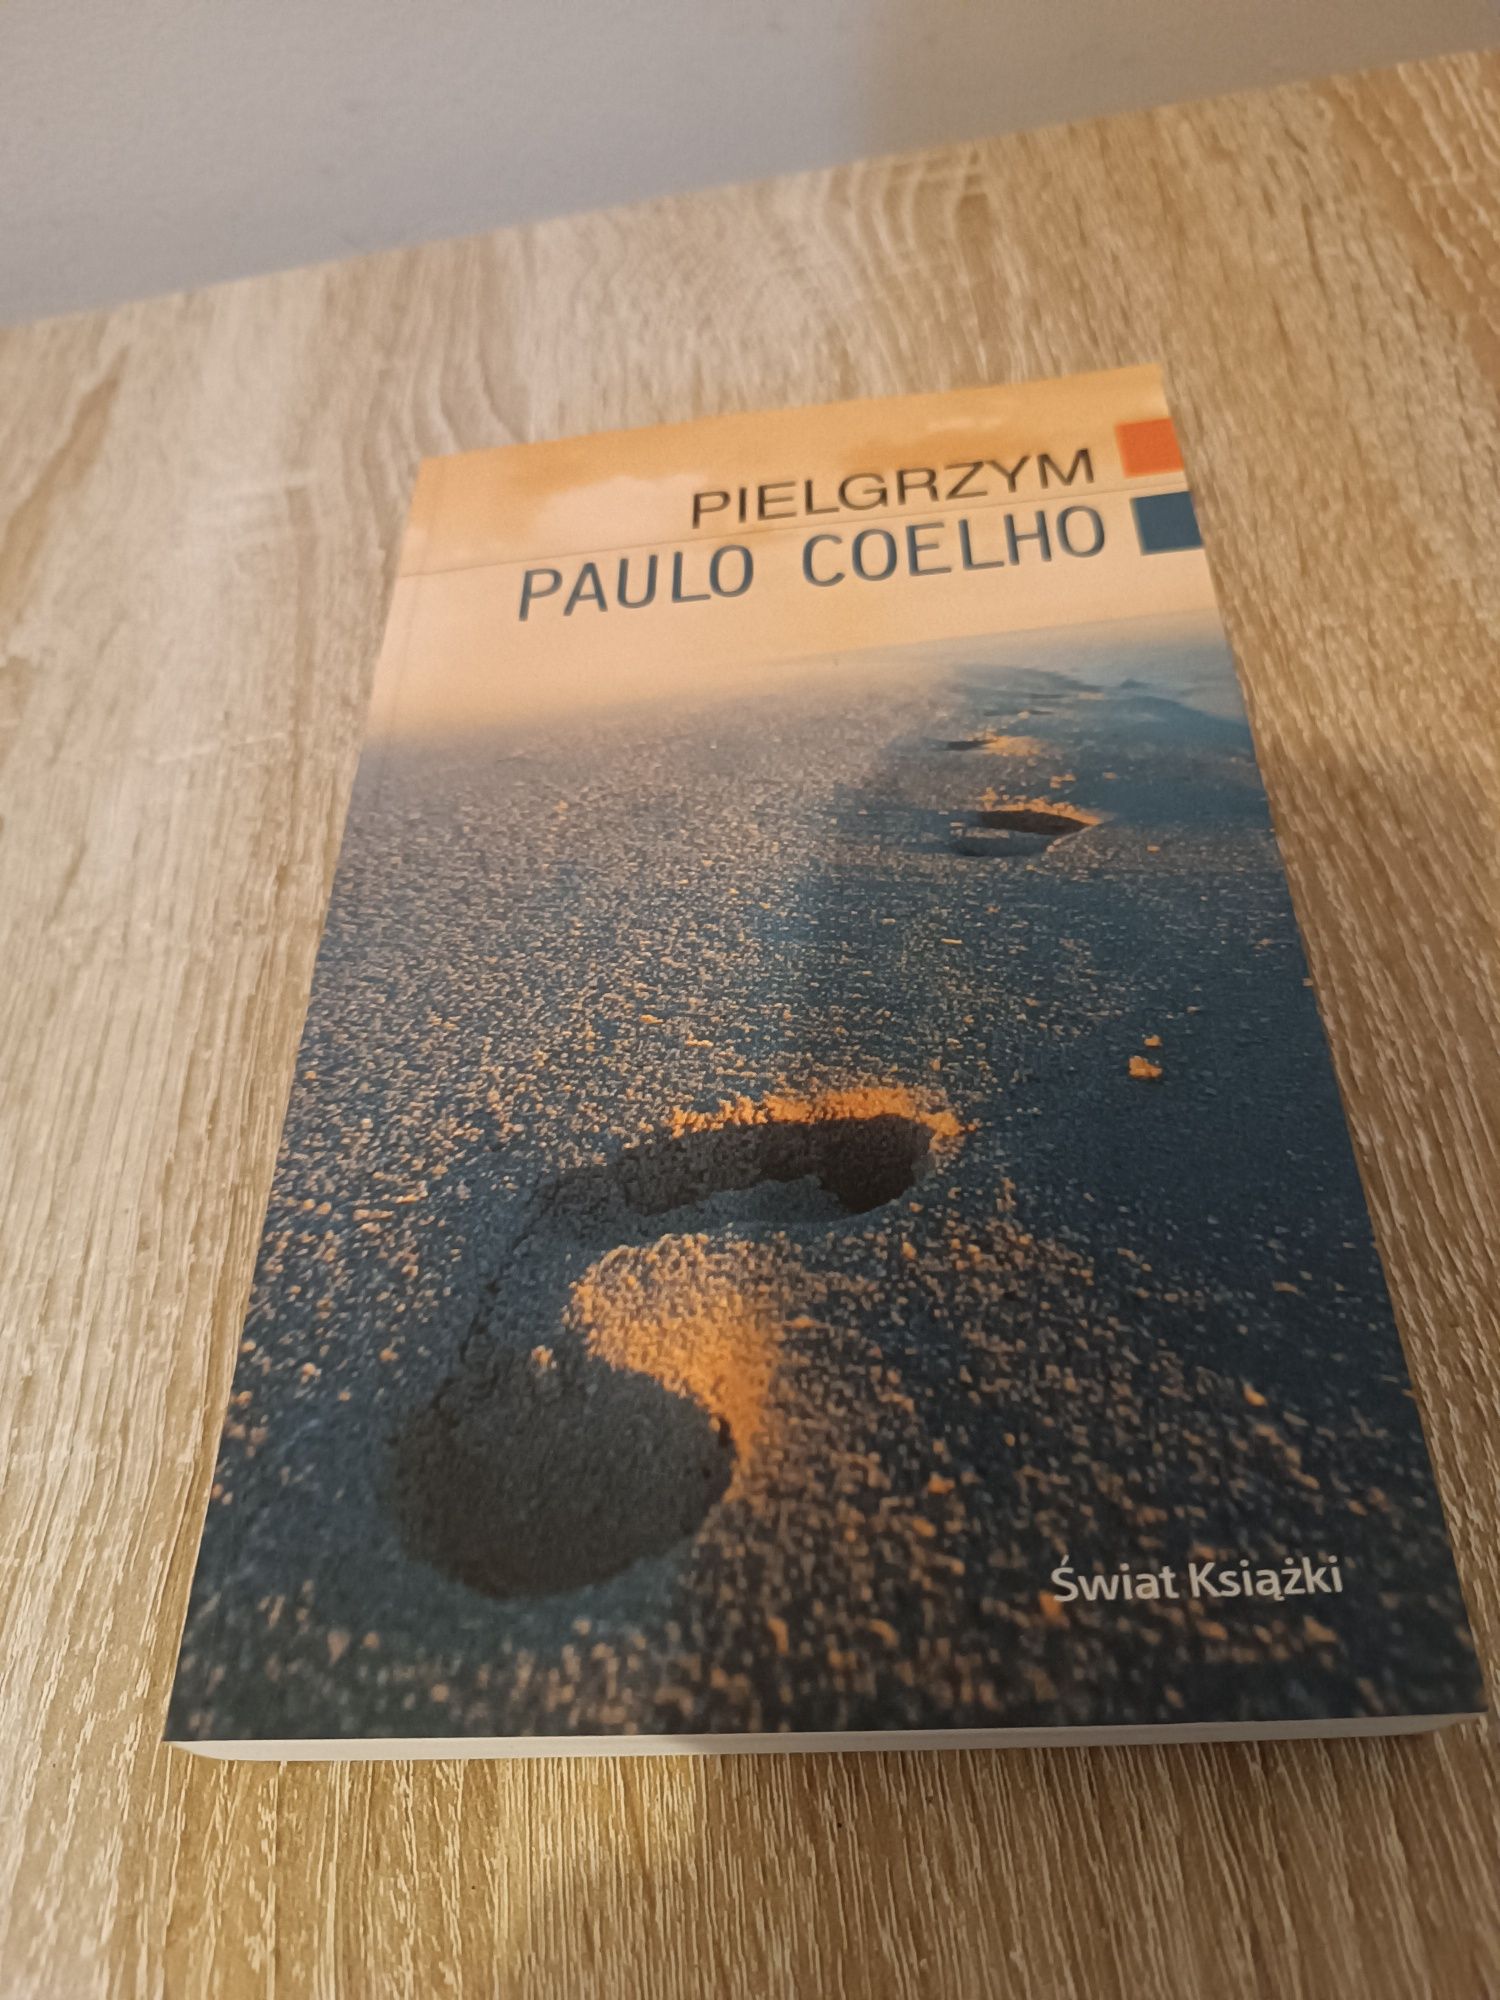 Paulo Coelho Pielgrzym, jak nowa wydawnictwo Drzewo Babel